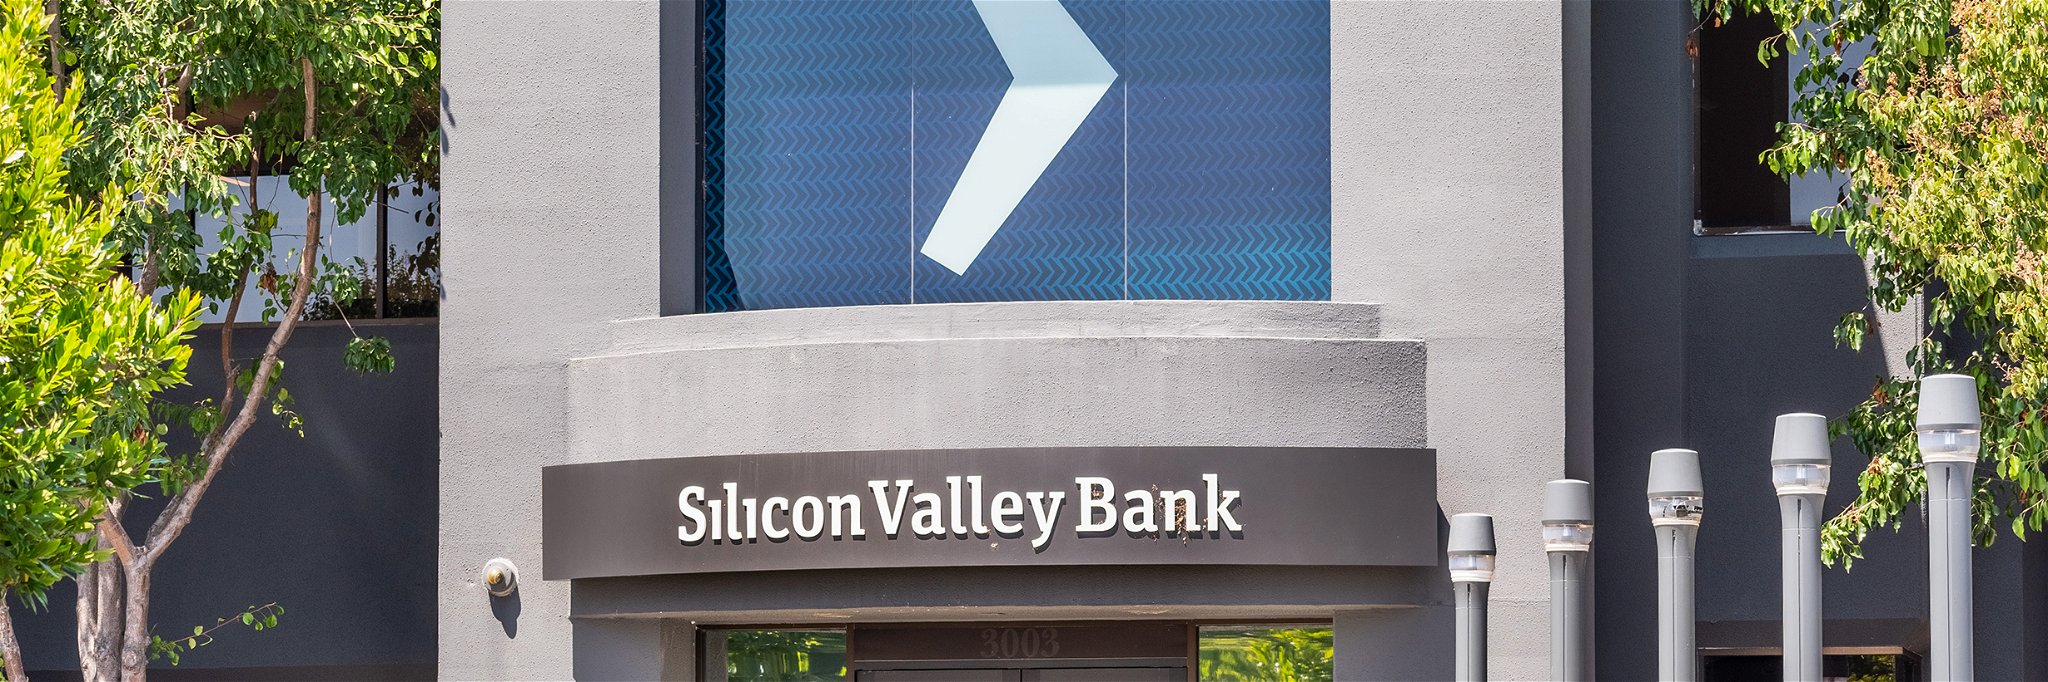 Silicon Valley Bank headquarters, Santa Clara